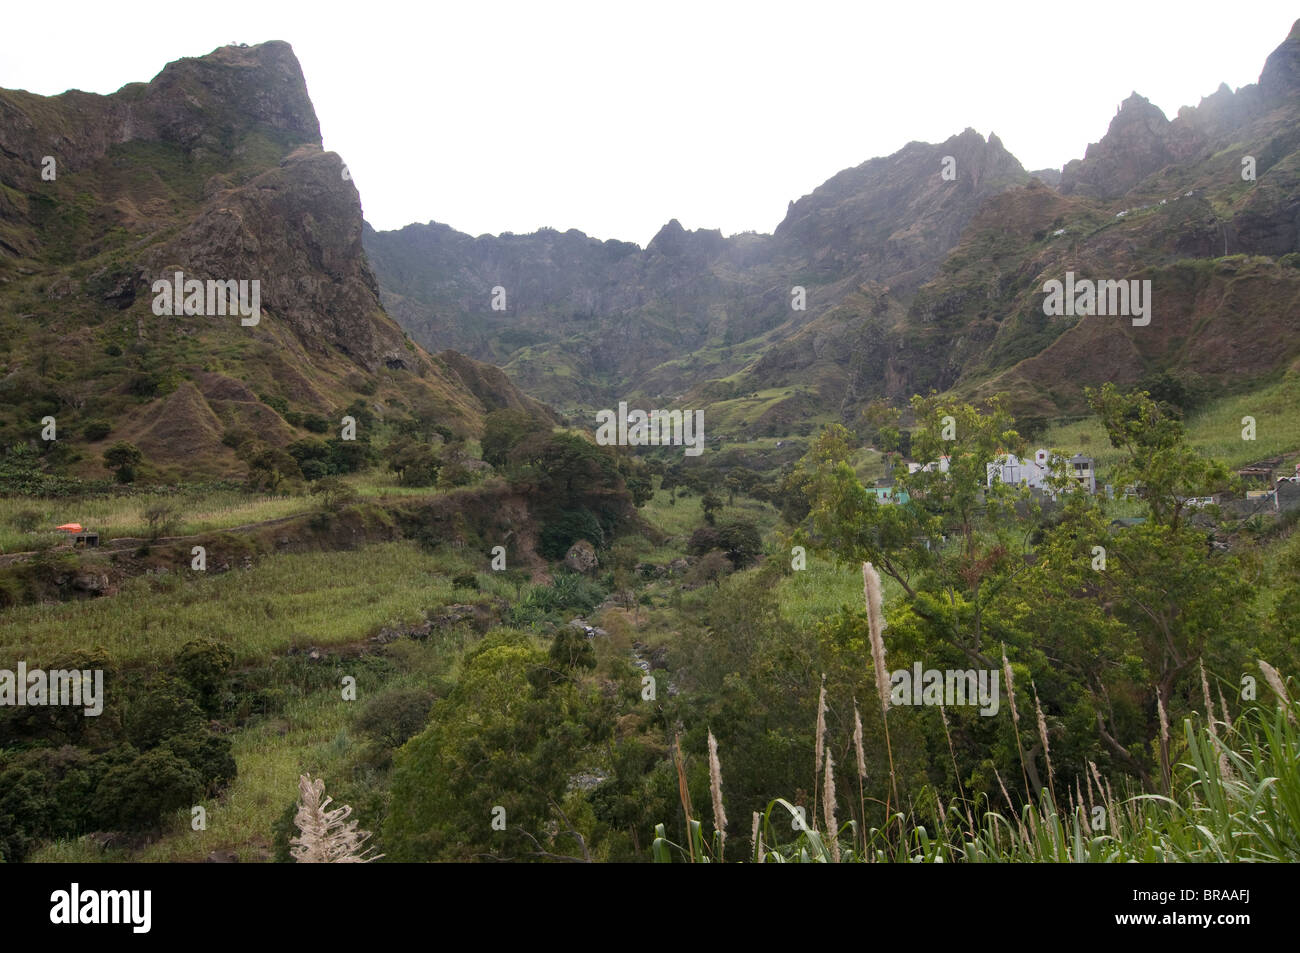 Paysage de montagne avec des terrasses et des petites maisons, San Antao, îles du Cap Vert, l'Afrique Banque D'Images